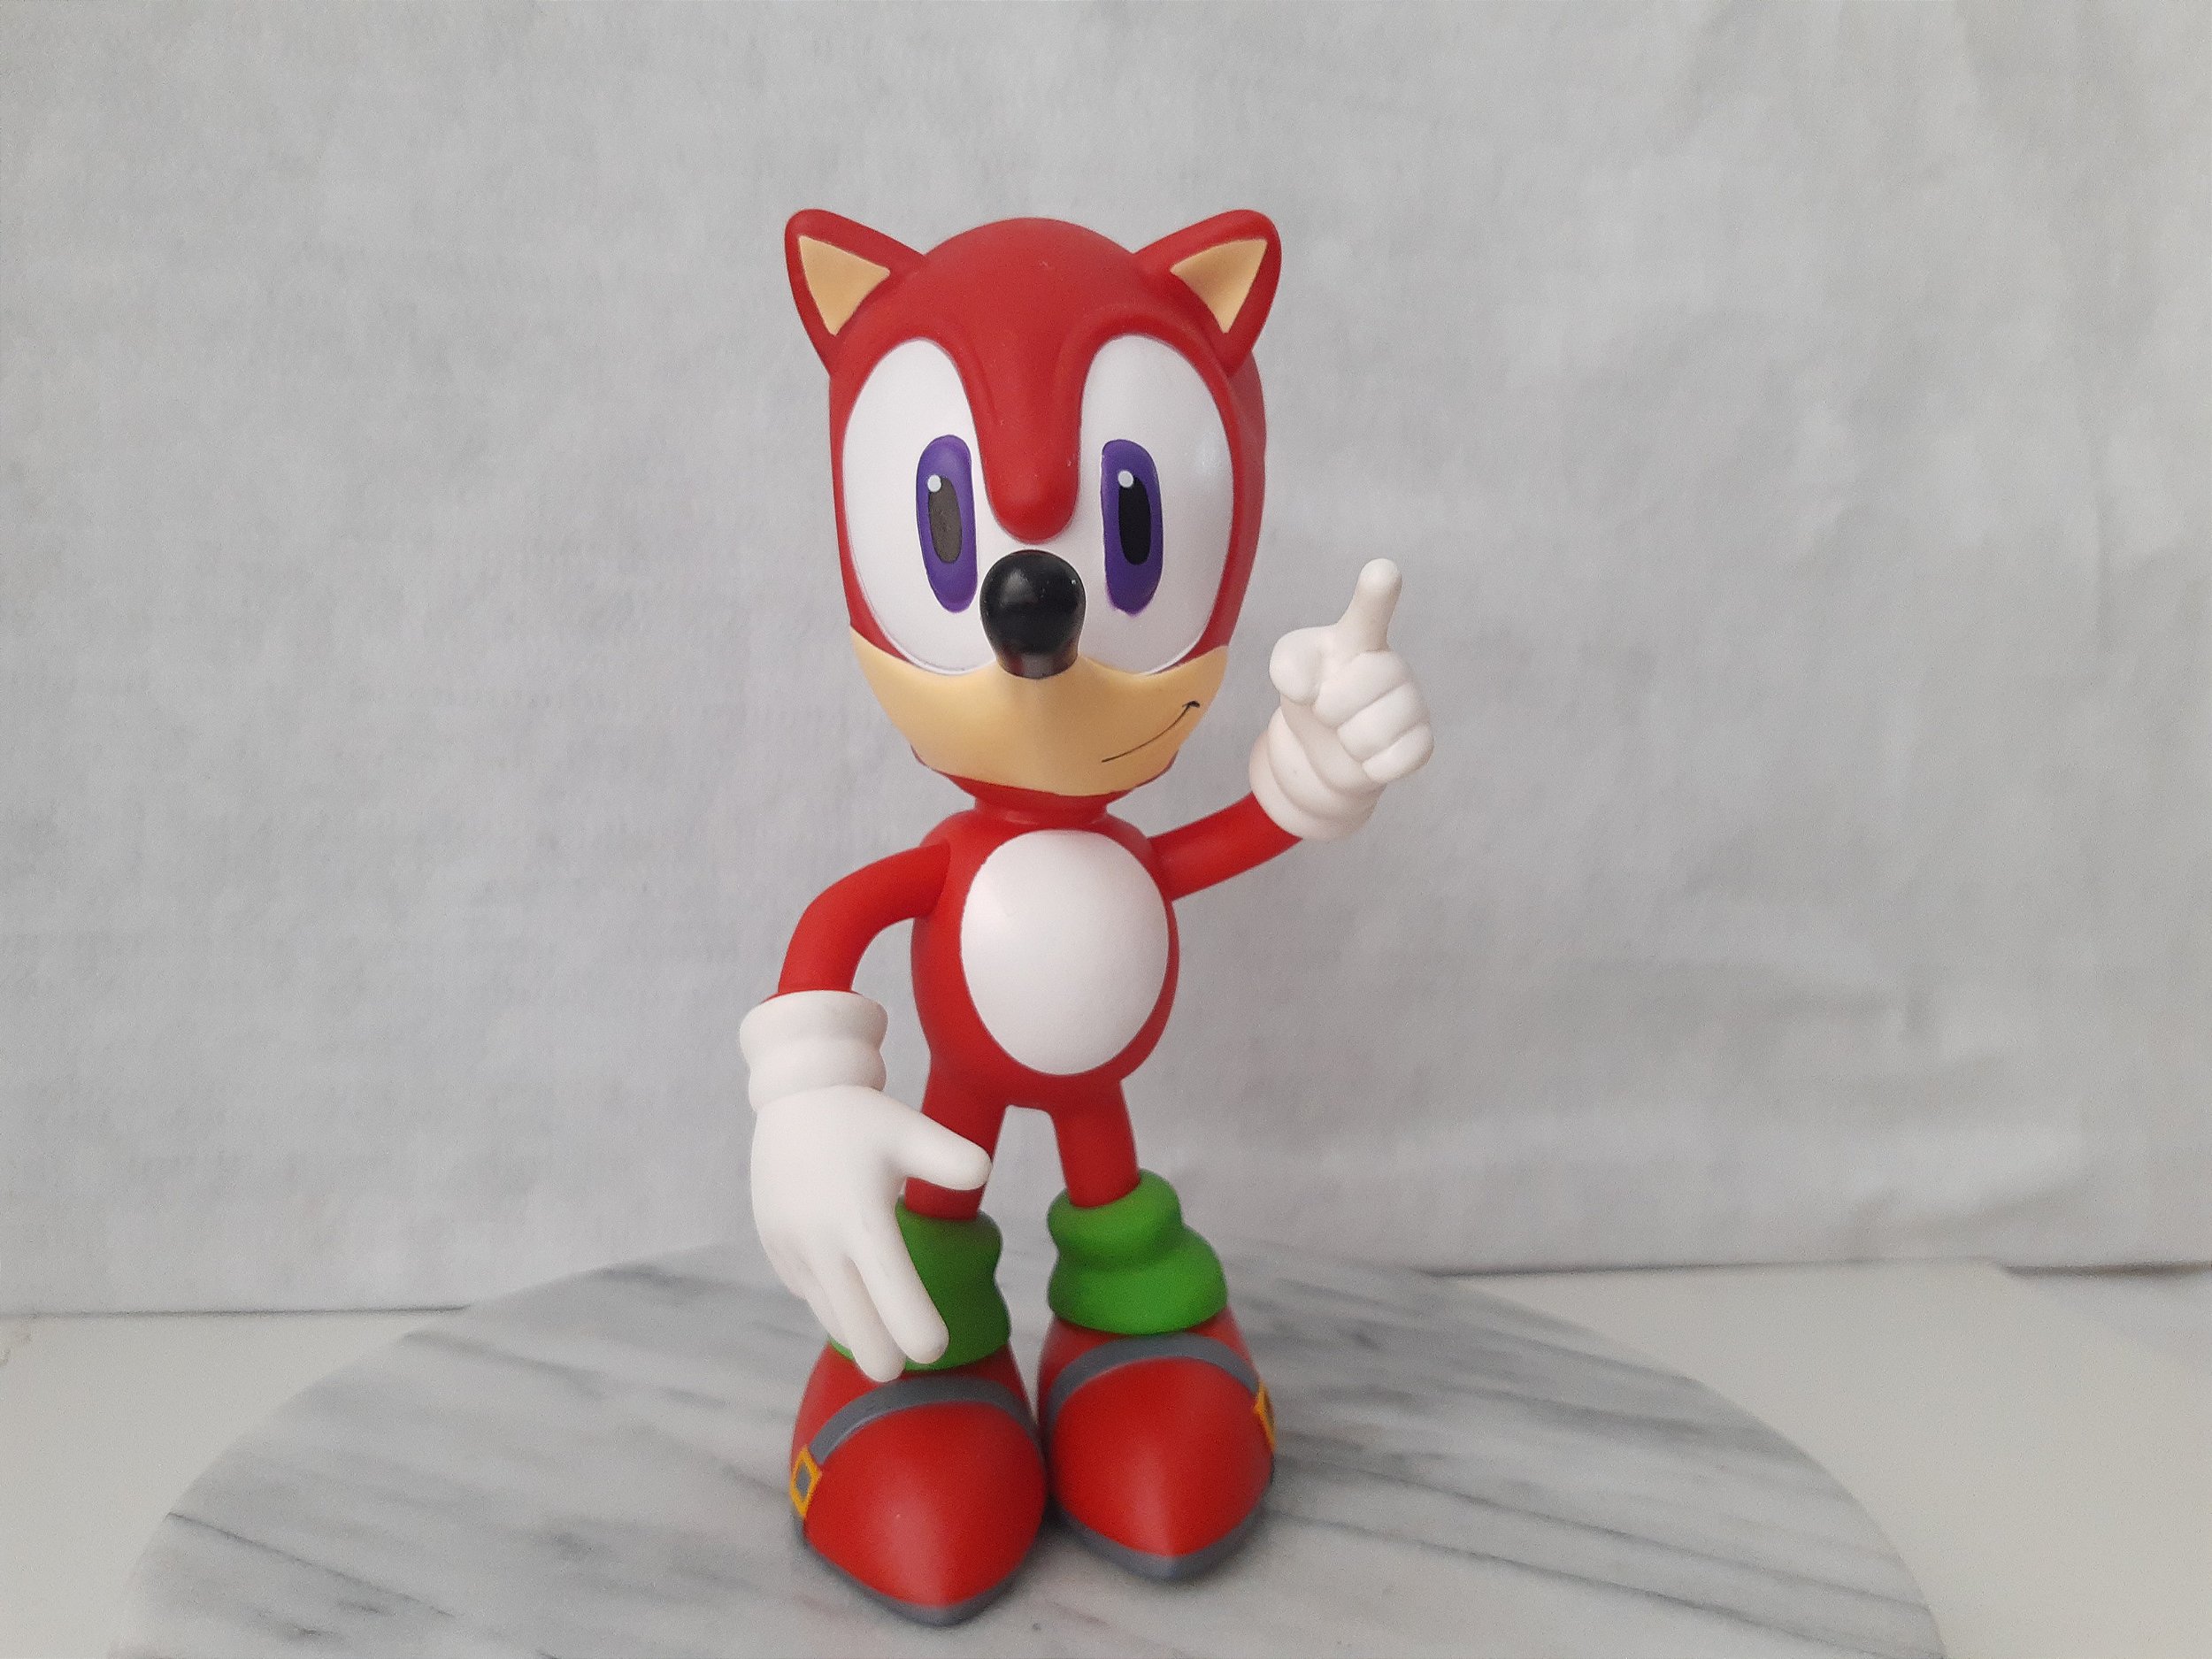 Boneco Sonic Articulado Com Acessório Hedgehog - Jakks